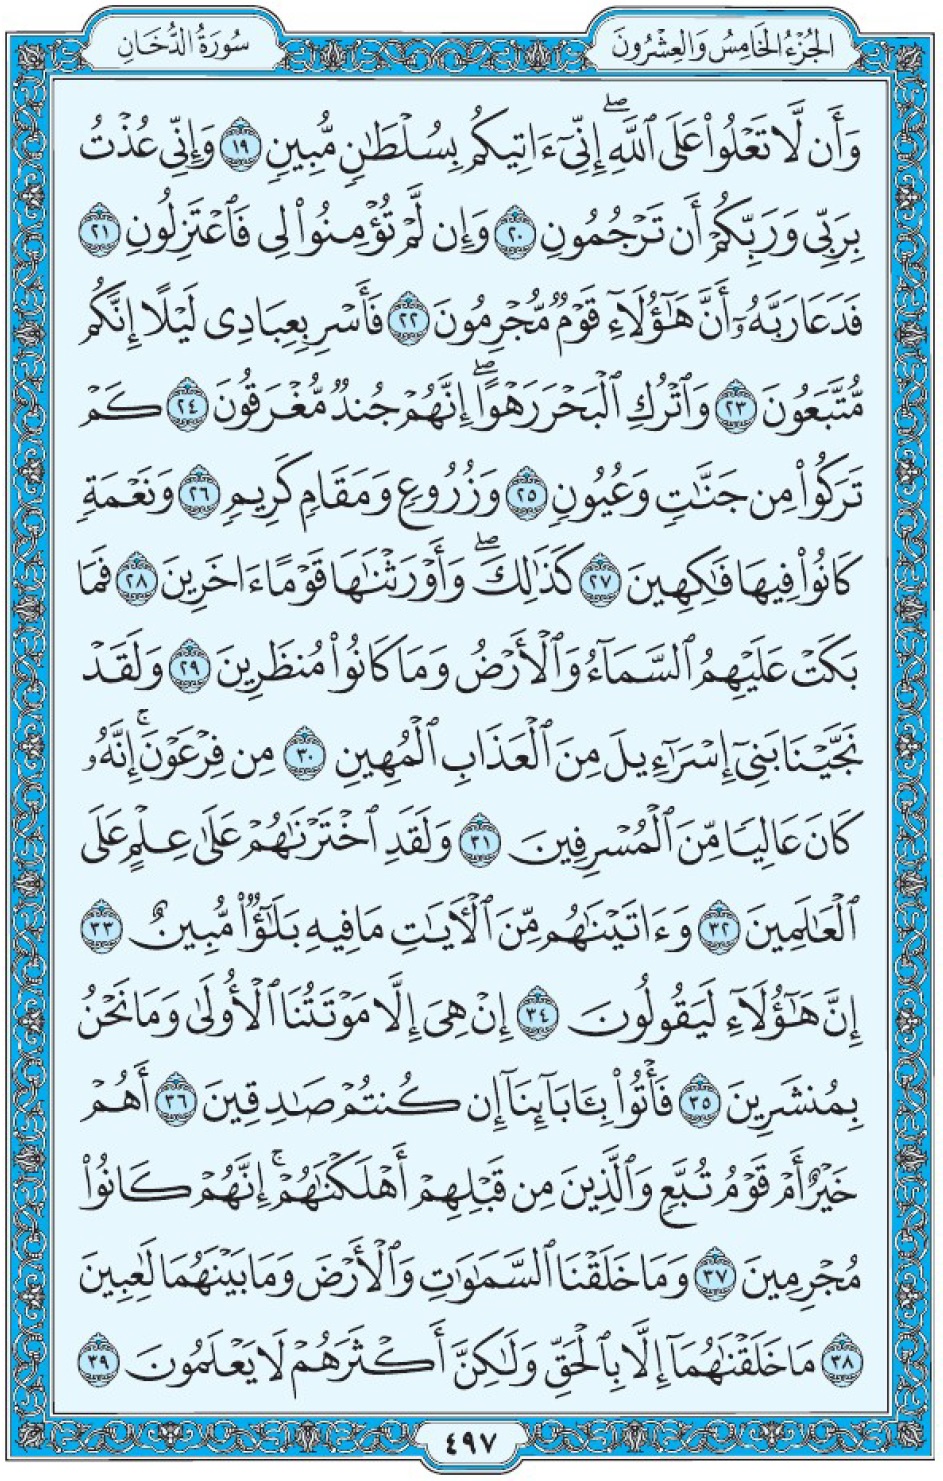 Коран Мединский мусхаф страница 497, Ад-Духан, аят 19-39